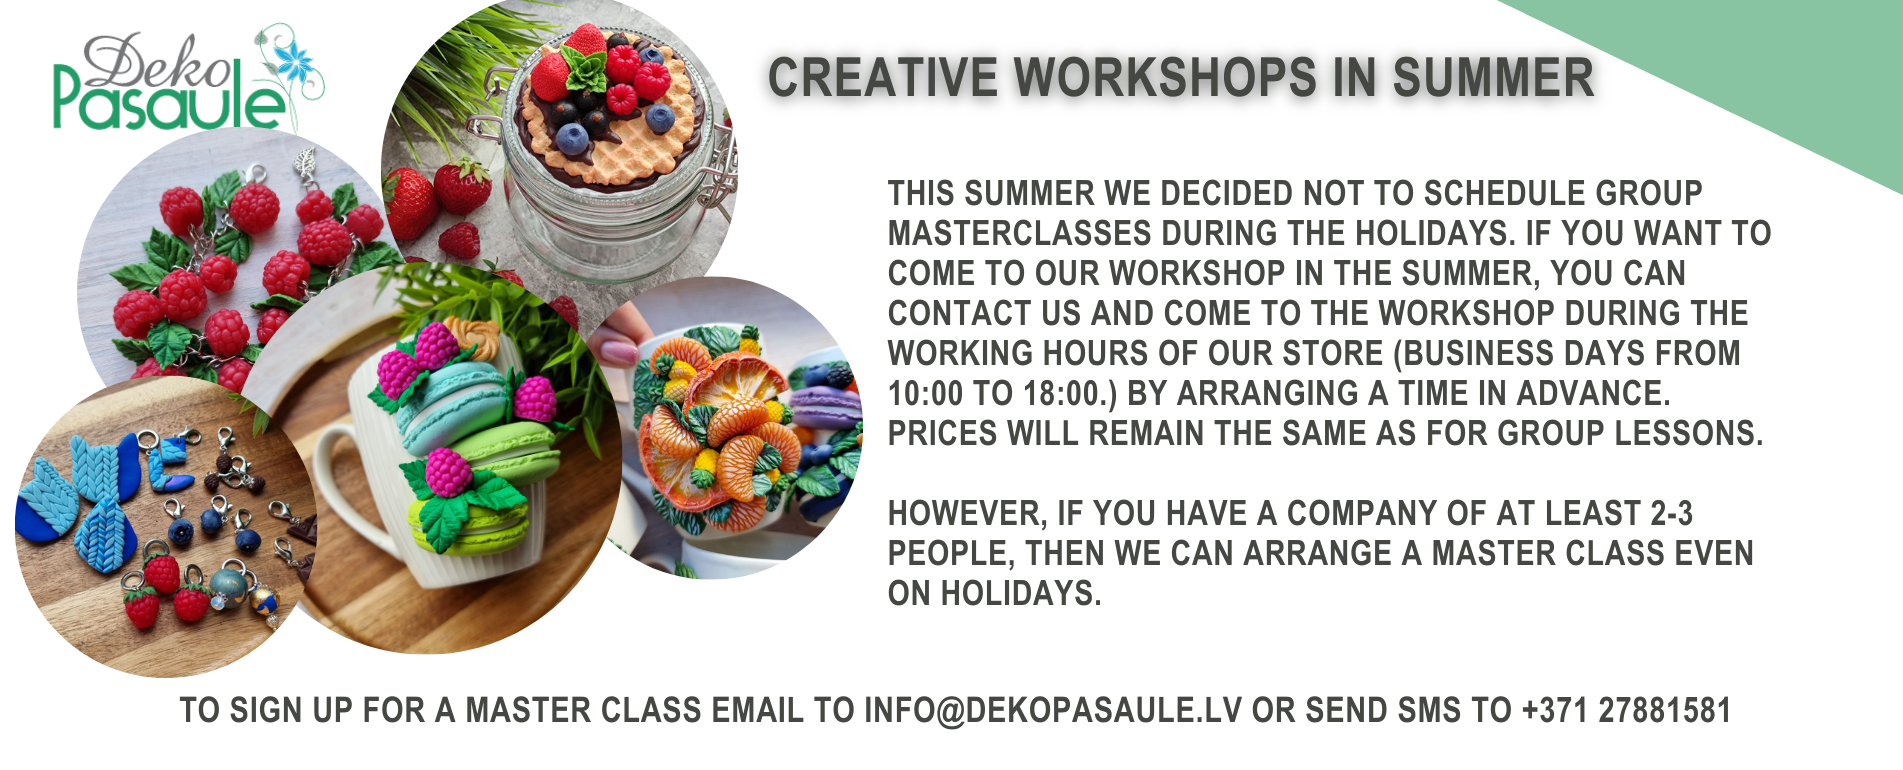 Summer workshops